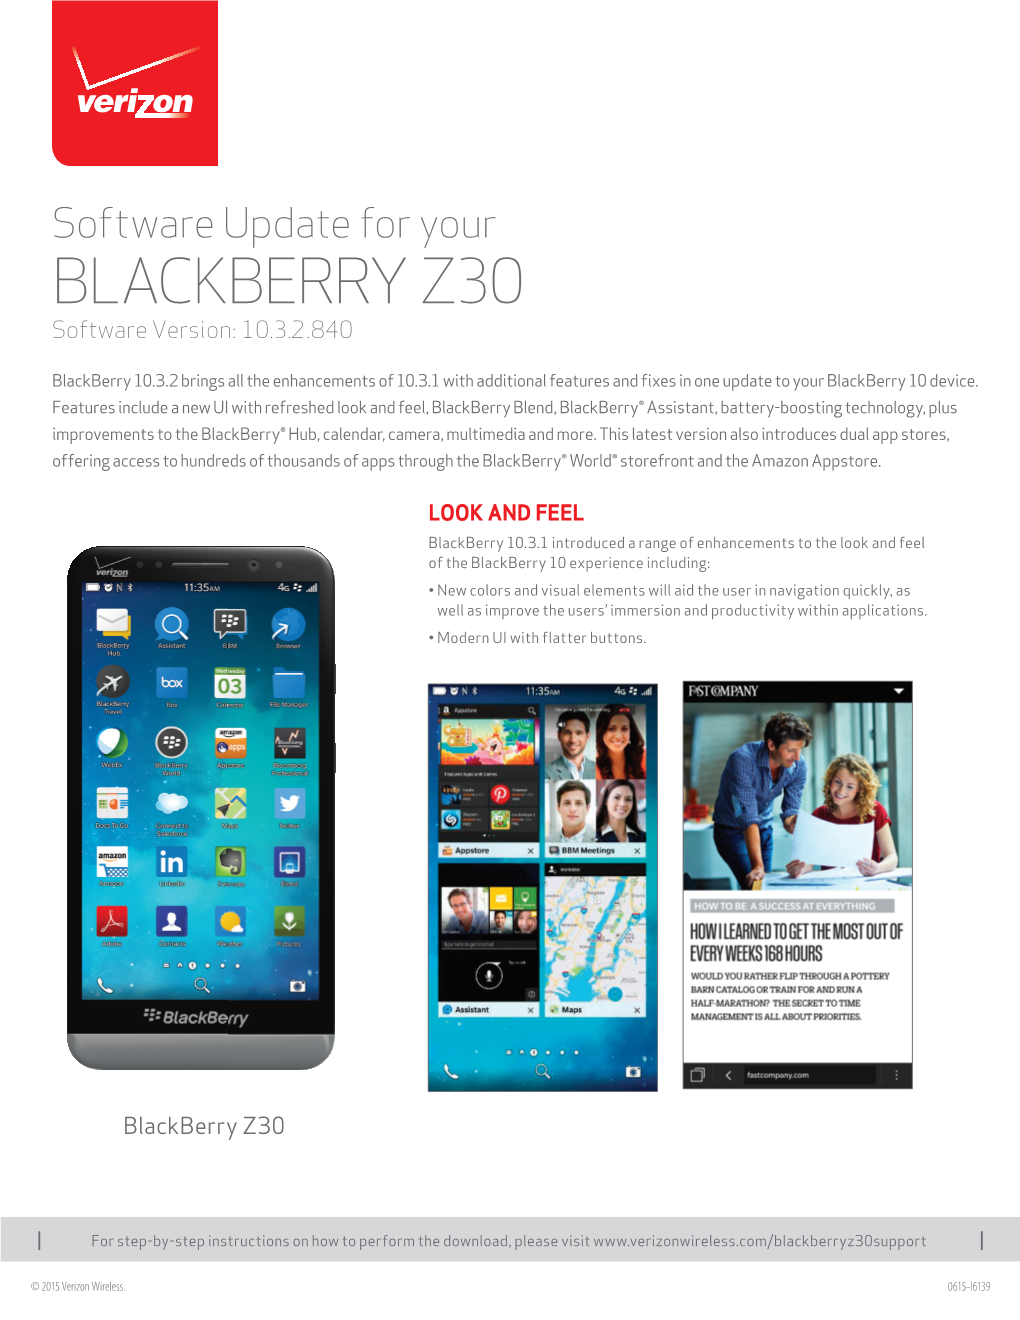 SLSE-I6139-Blackberry Z30 SU-V4.Indd